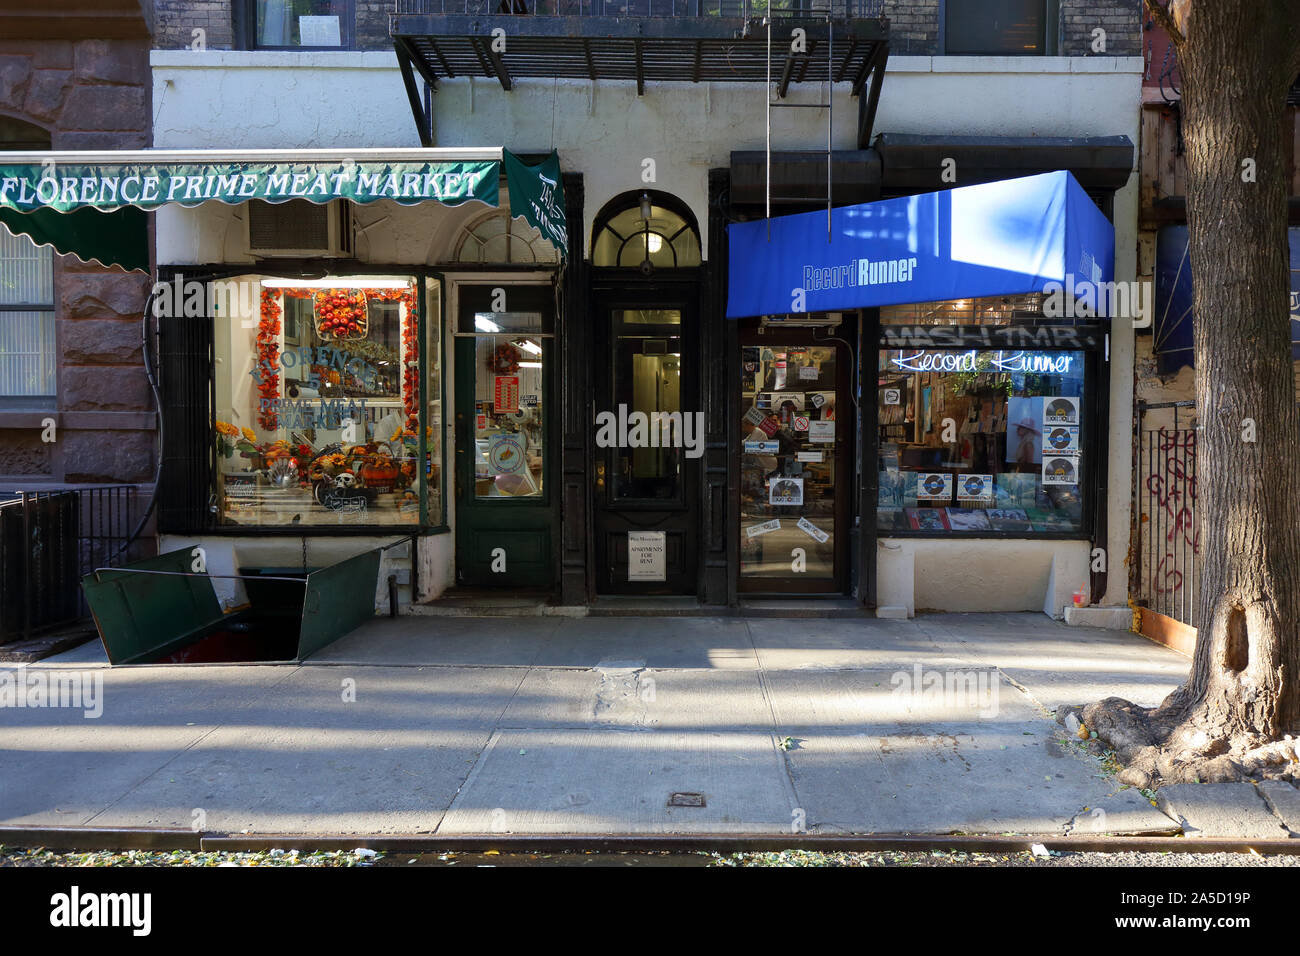 Florencia El primer mercado de carne, Record Runner, 5 Jones Street, New York, NY. exterior tiendas en el barrio de Greenwich Village de Manhattan. Foto de stock